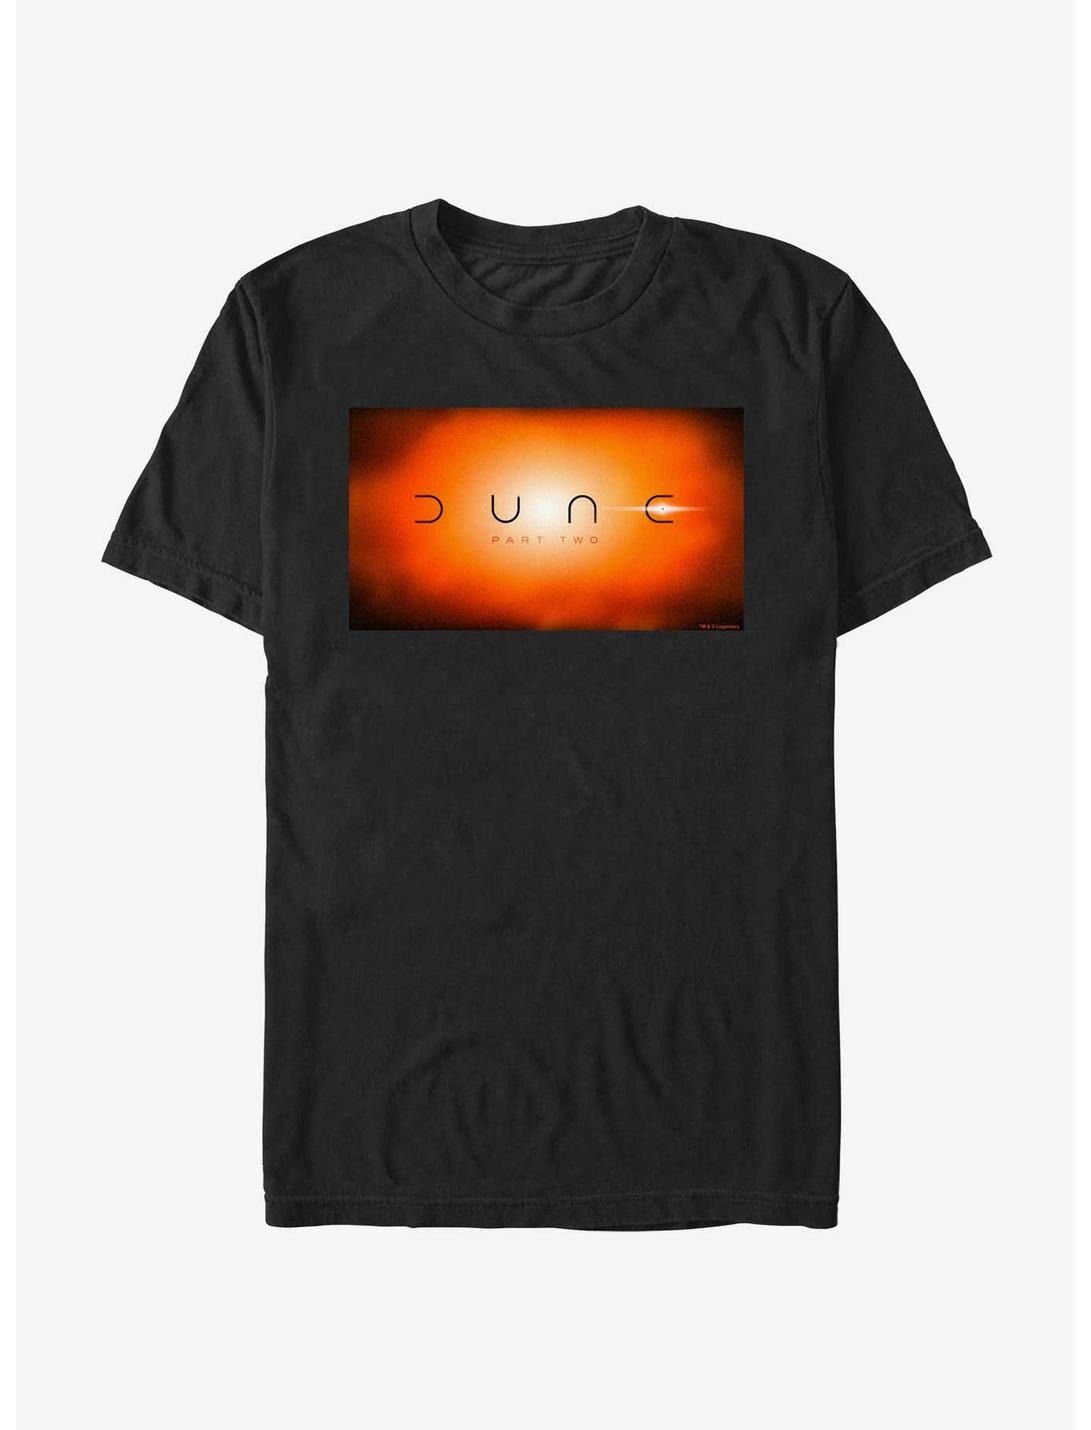 Dune: Part Two Eclipse T-Shirt, BLACK, hi-res